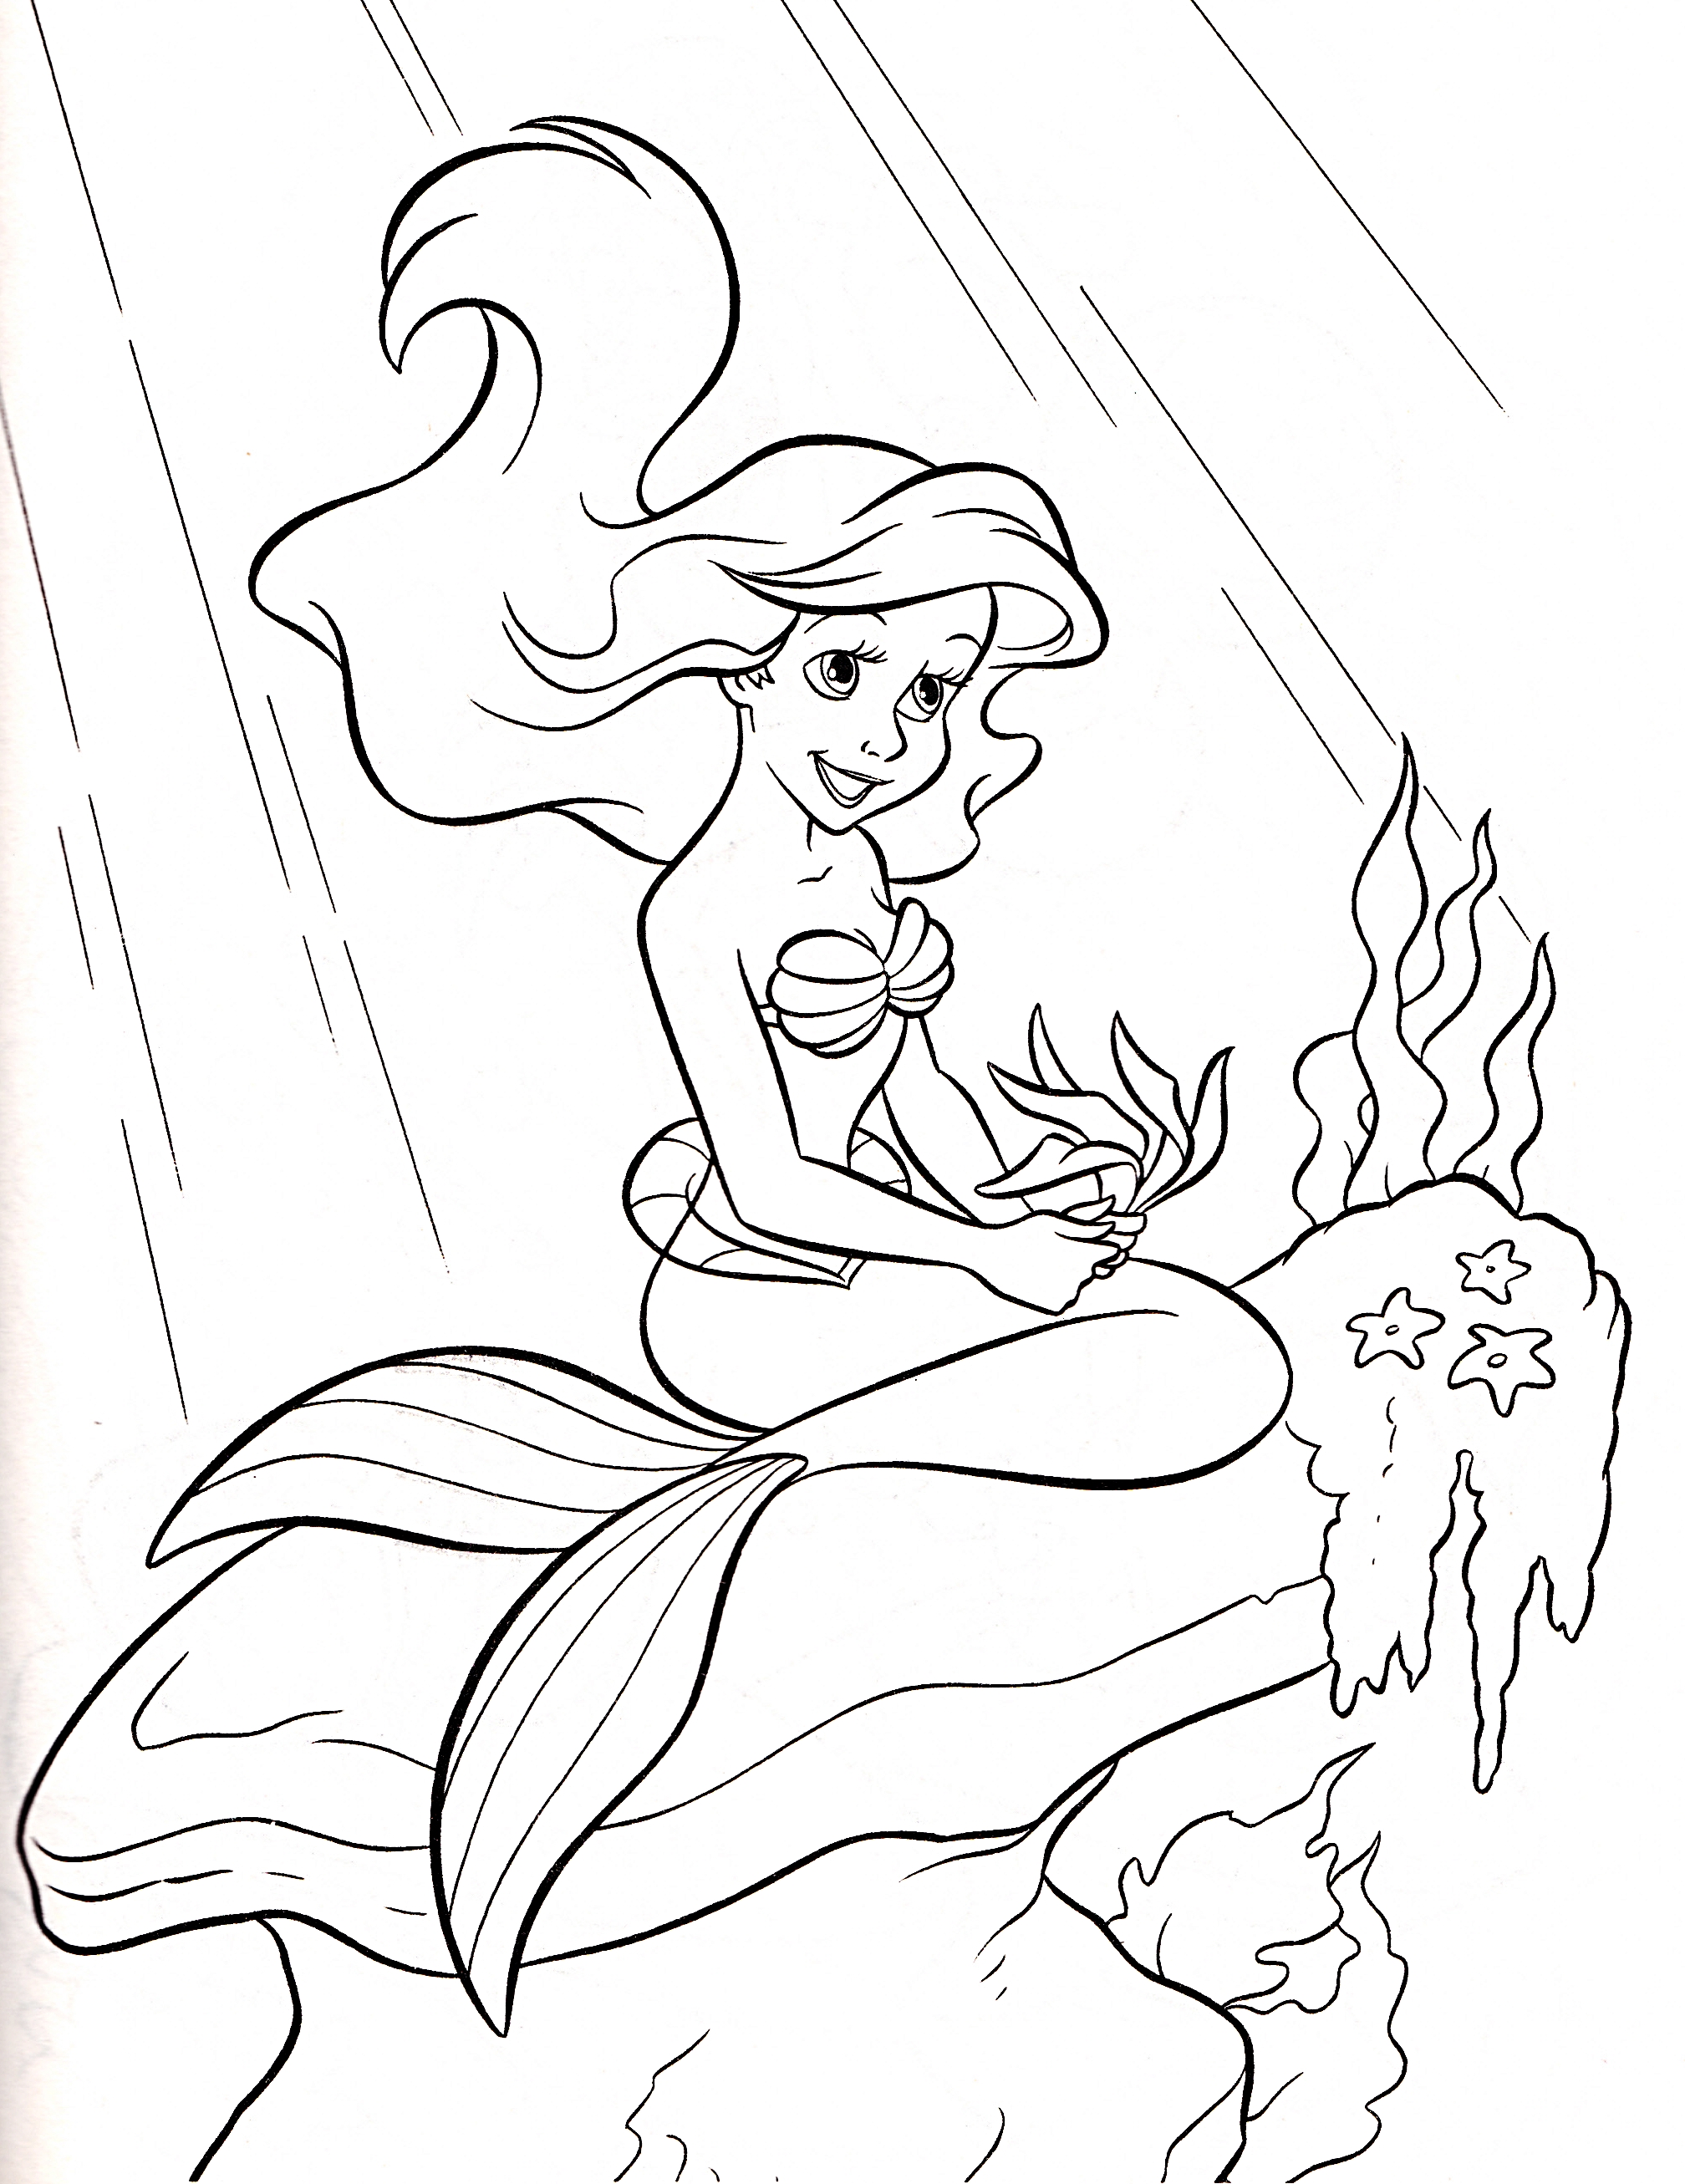 walt-disney-coloring-pages-princess-ariel